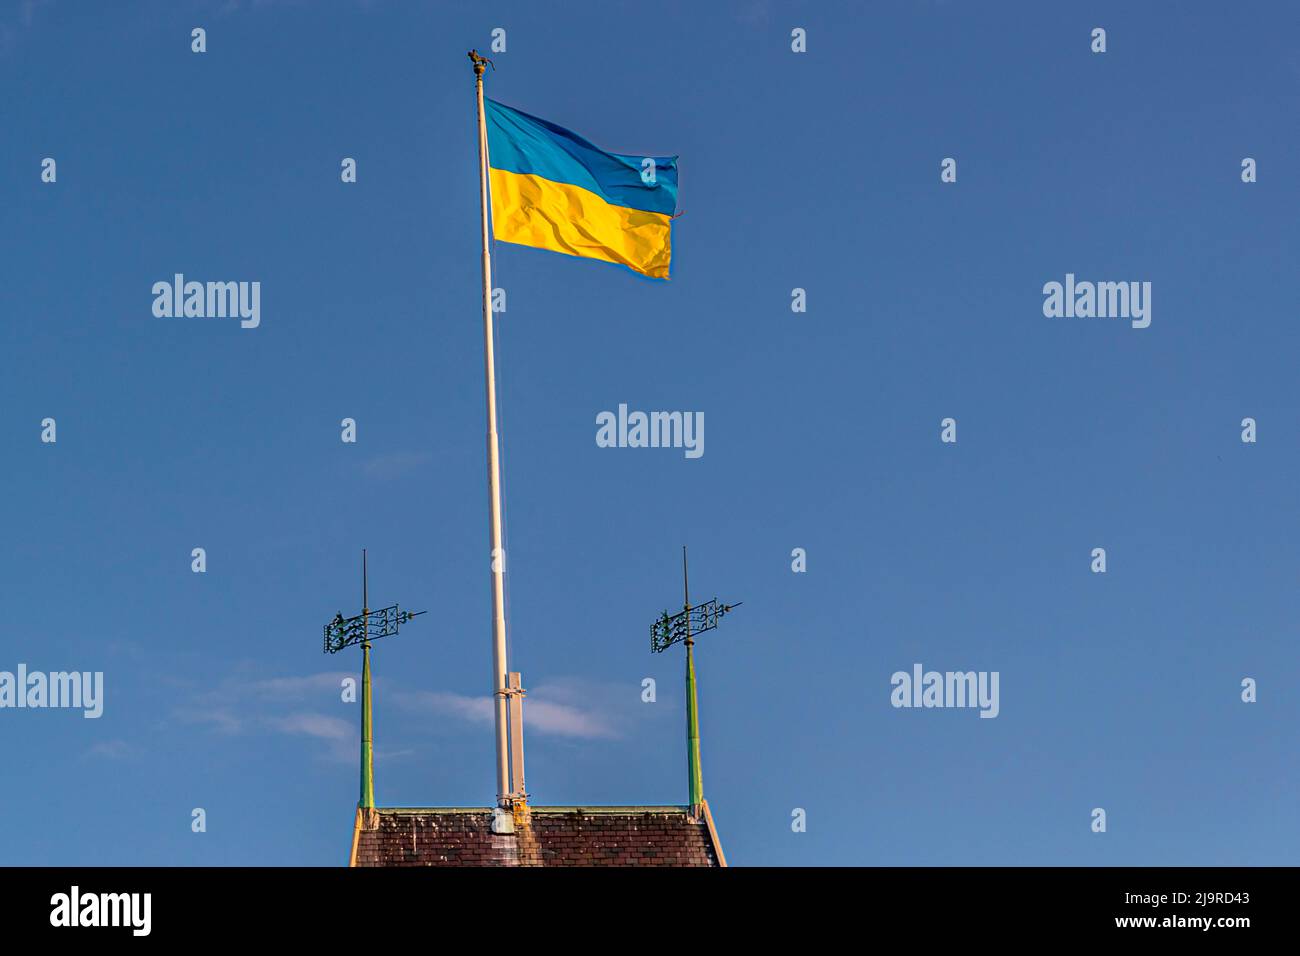 Ukrainian flag in the port of Aarhus, Denmark Stock Photo